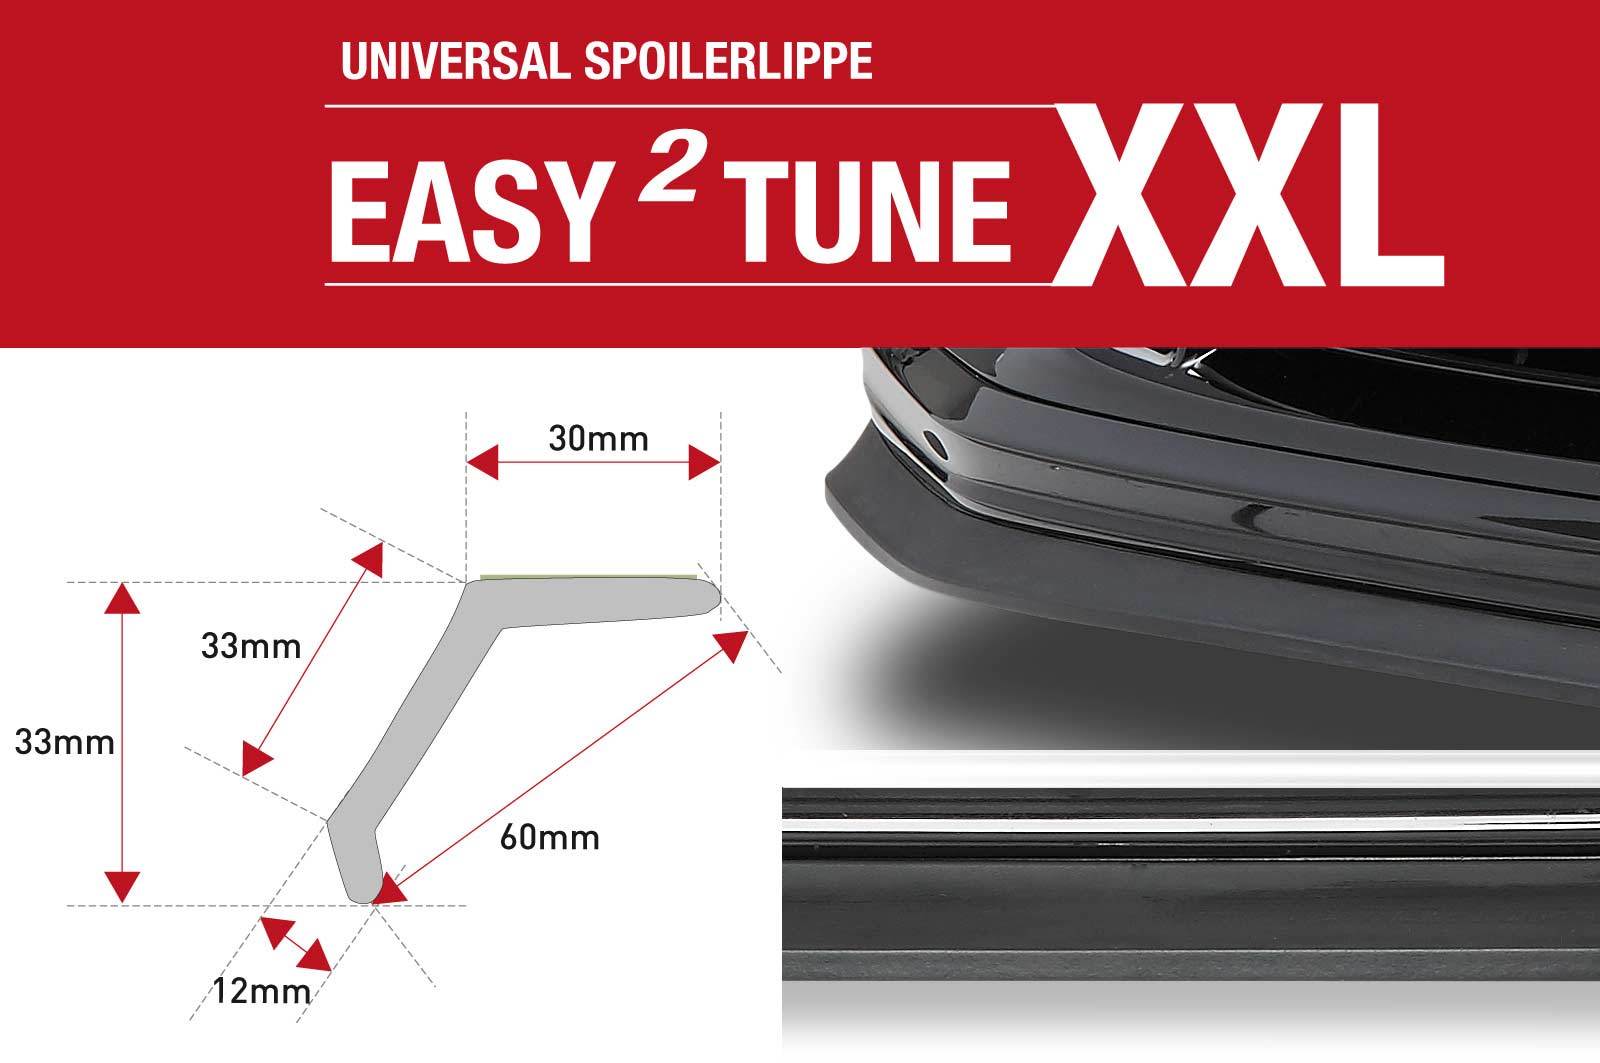 easy²tune XXL Universal Spoilerlippe zum ankleben ZB144, Zubehör, Aerodynamik, Auto Tuning